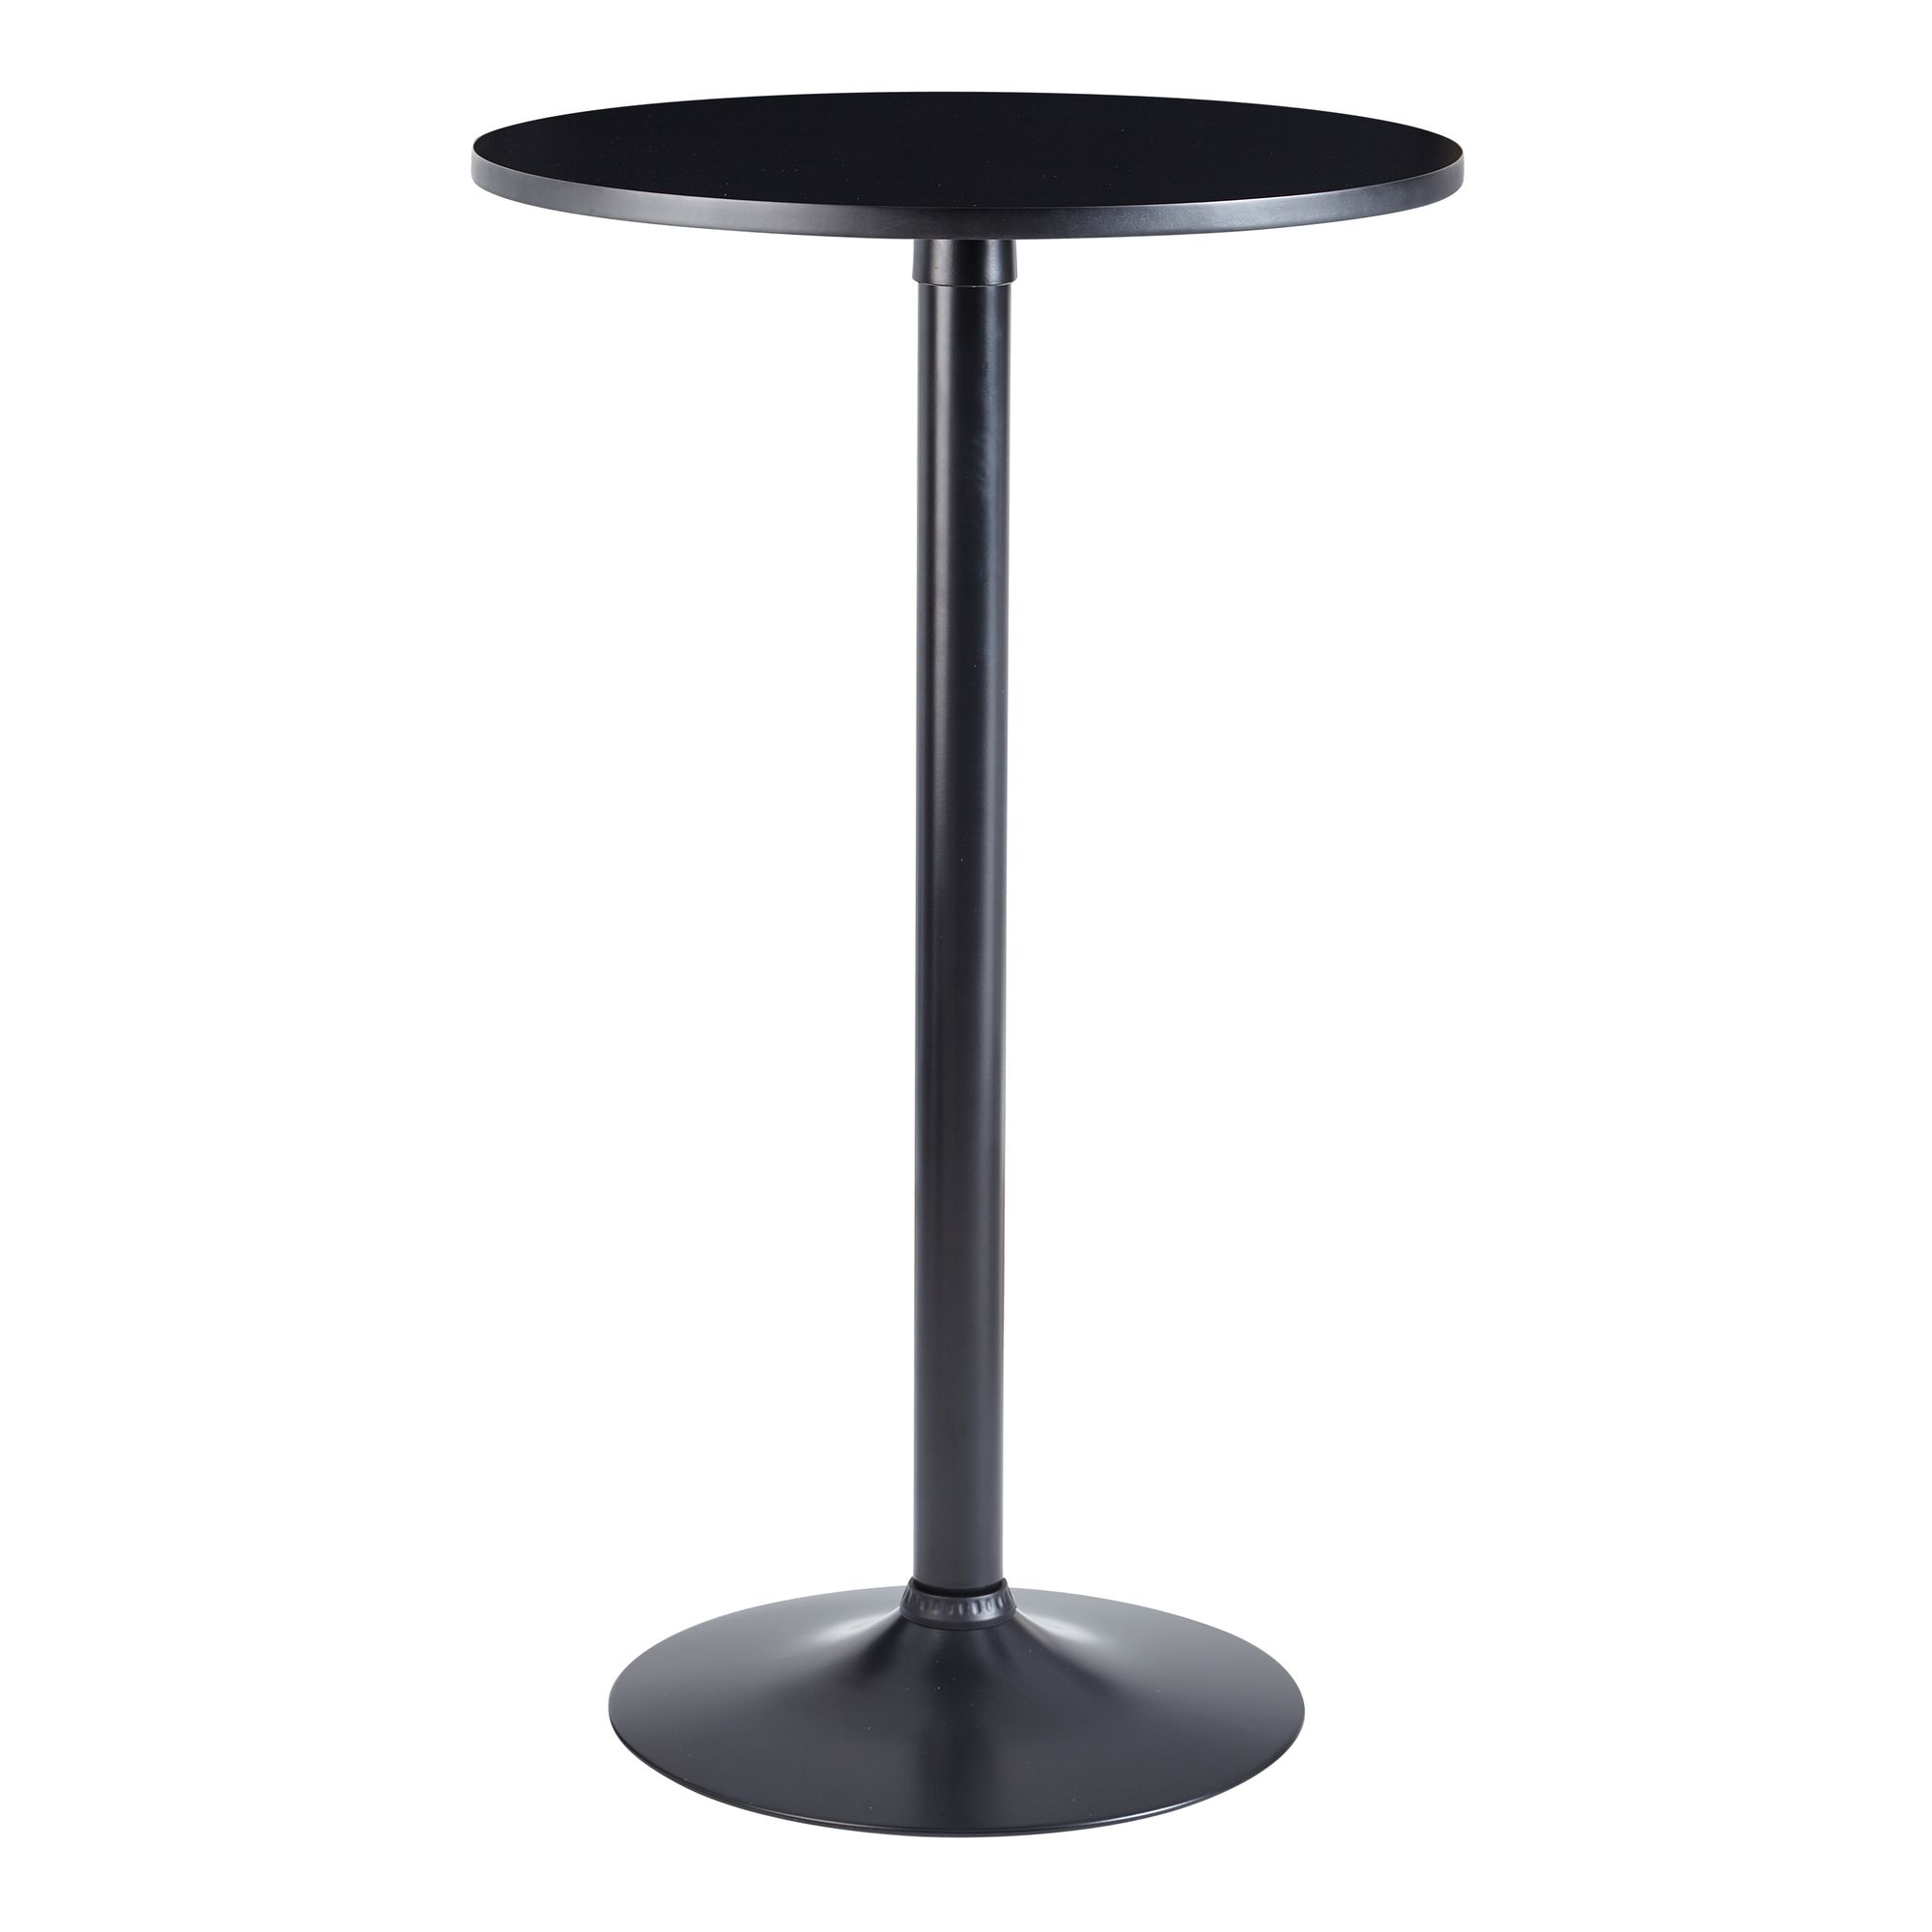 Стол высотой 90 см. Приставной столик черный дизайнерский 60 см Parabel Side Table. Стол барный 70х70 110 высота черный. Подстолье Bistrot Bronze. Барный стол высота 110 см.